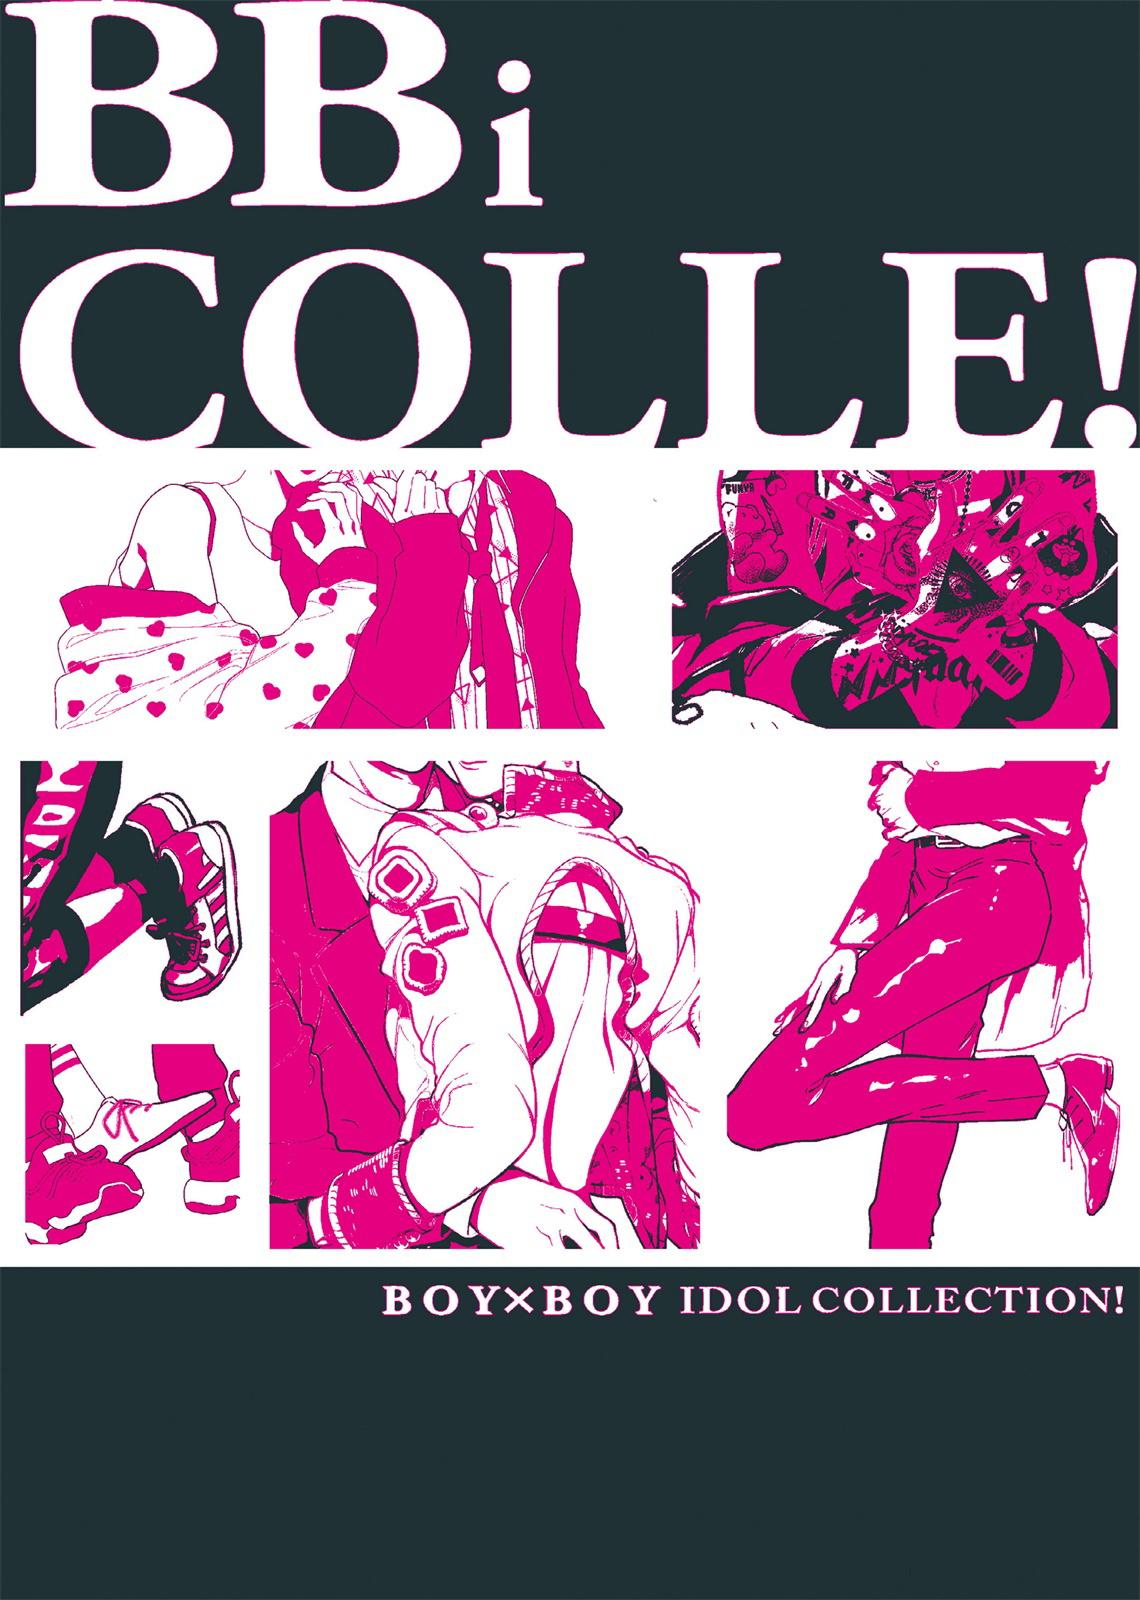 BOY x BOY IDOL COLLECTION! 68